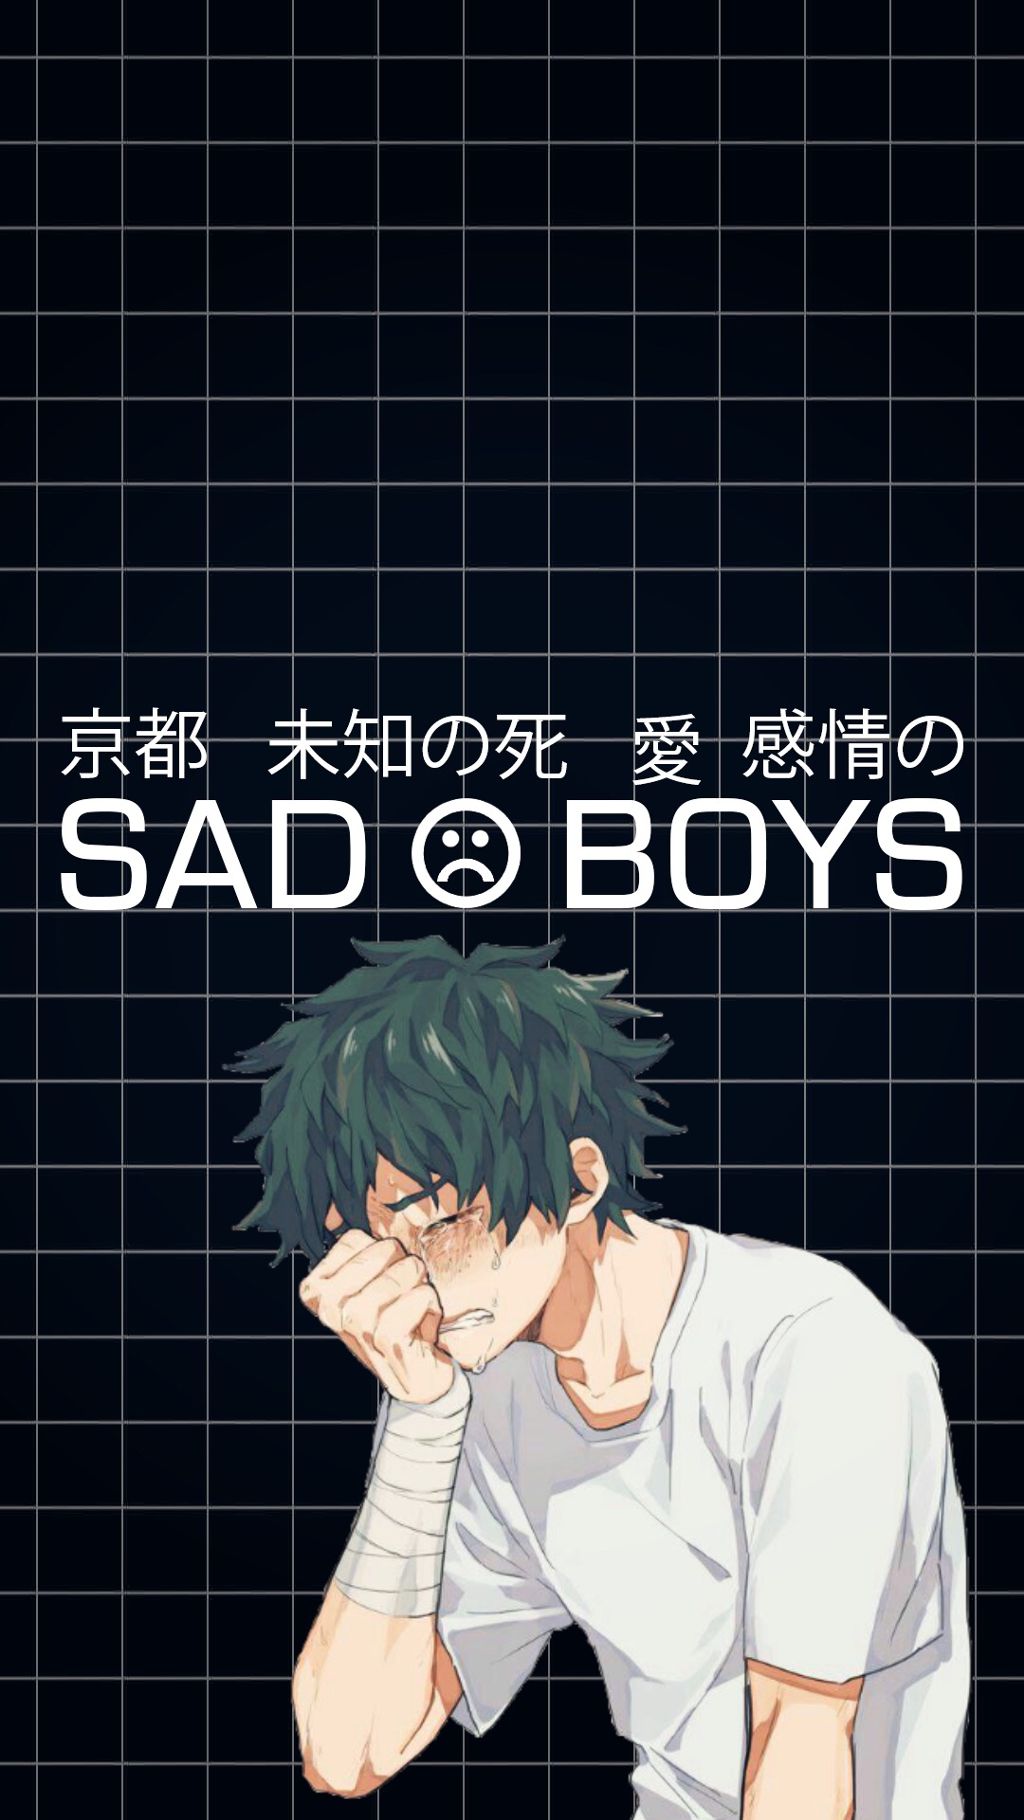 #bnha #bokunoheroacademia #myheroacademia #sad #sadboy - Sadboys Wallpaper Iphone - HD Wallpaper 